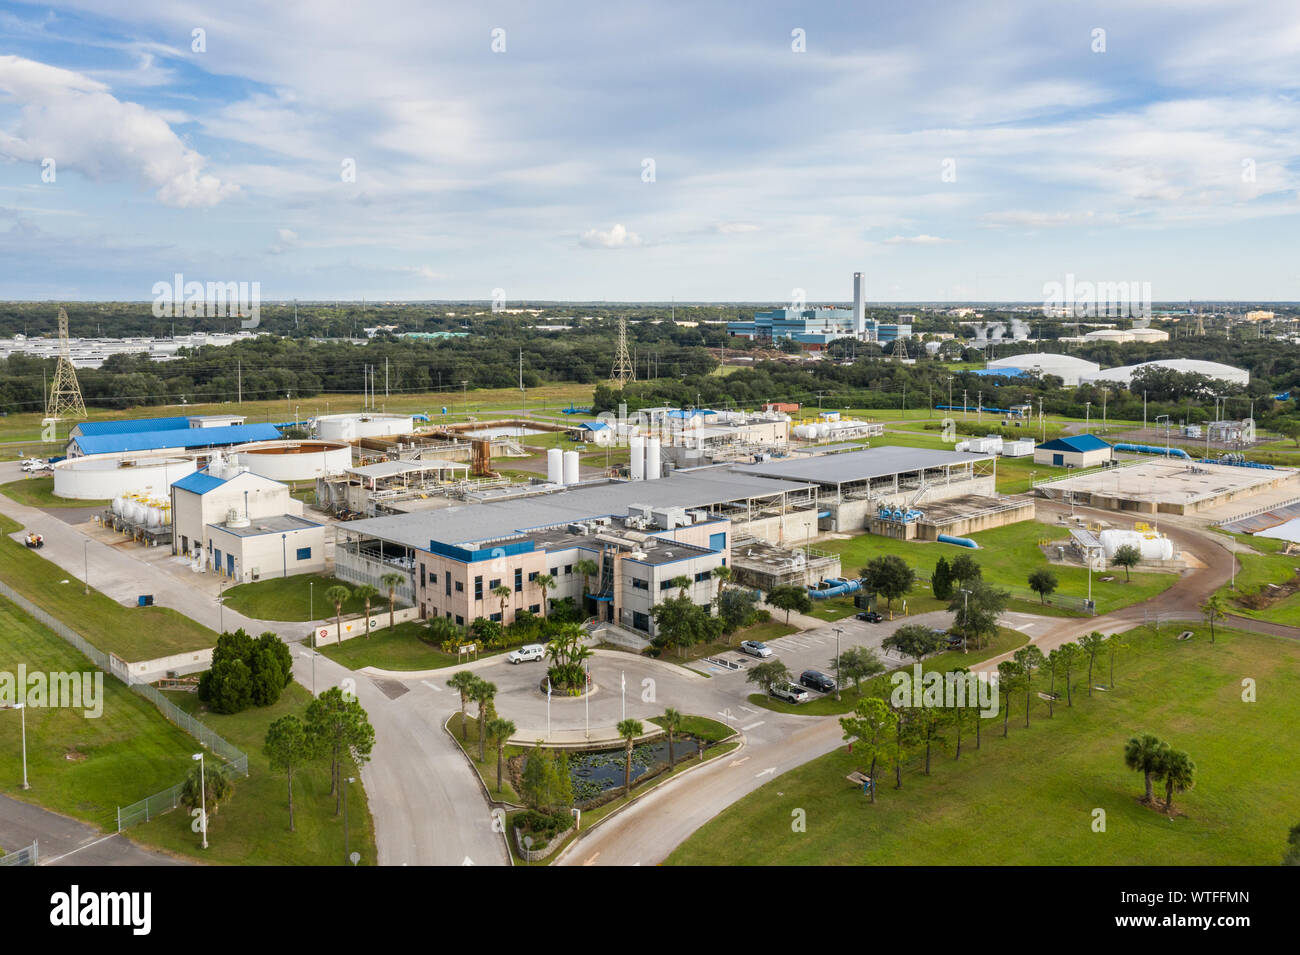 Vista aérea de la planta Regional de tratamiento de Aguas superficiales de Tampa Bay en Tampa, Florida. Foto de stock